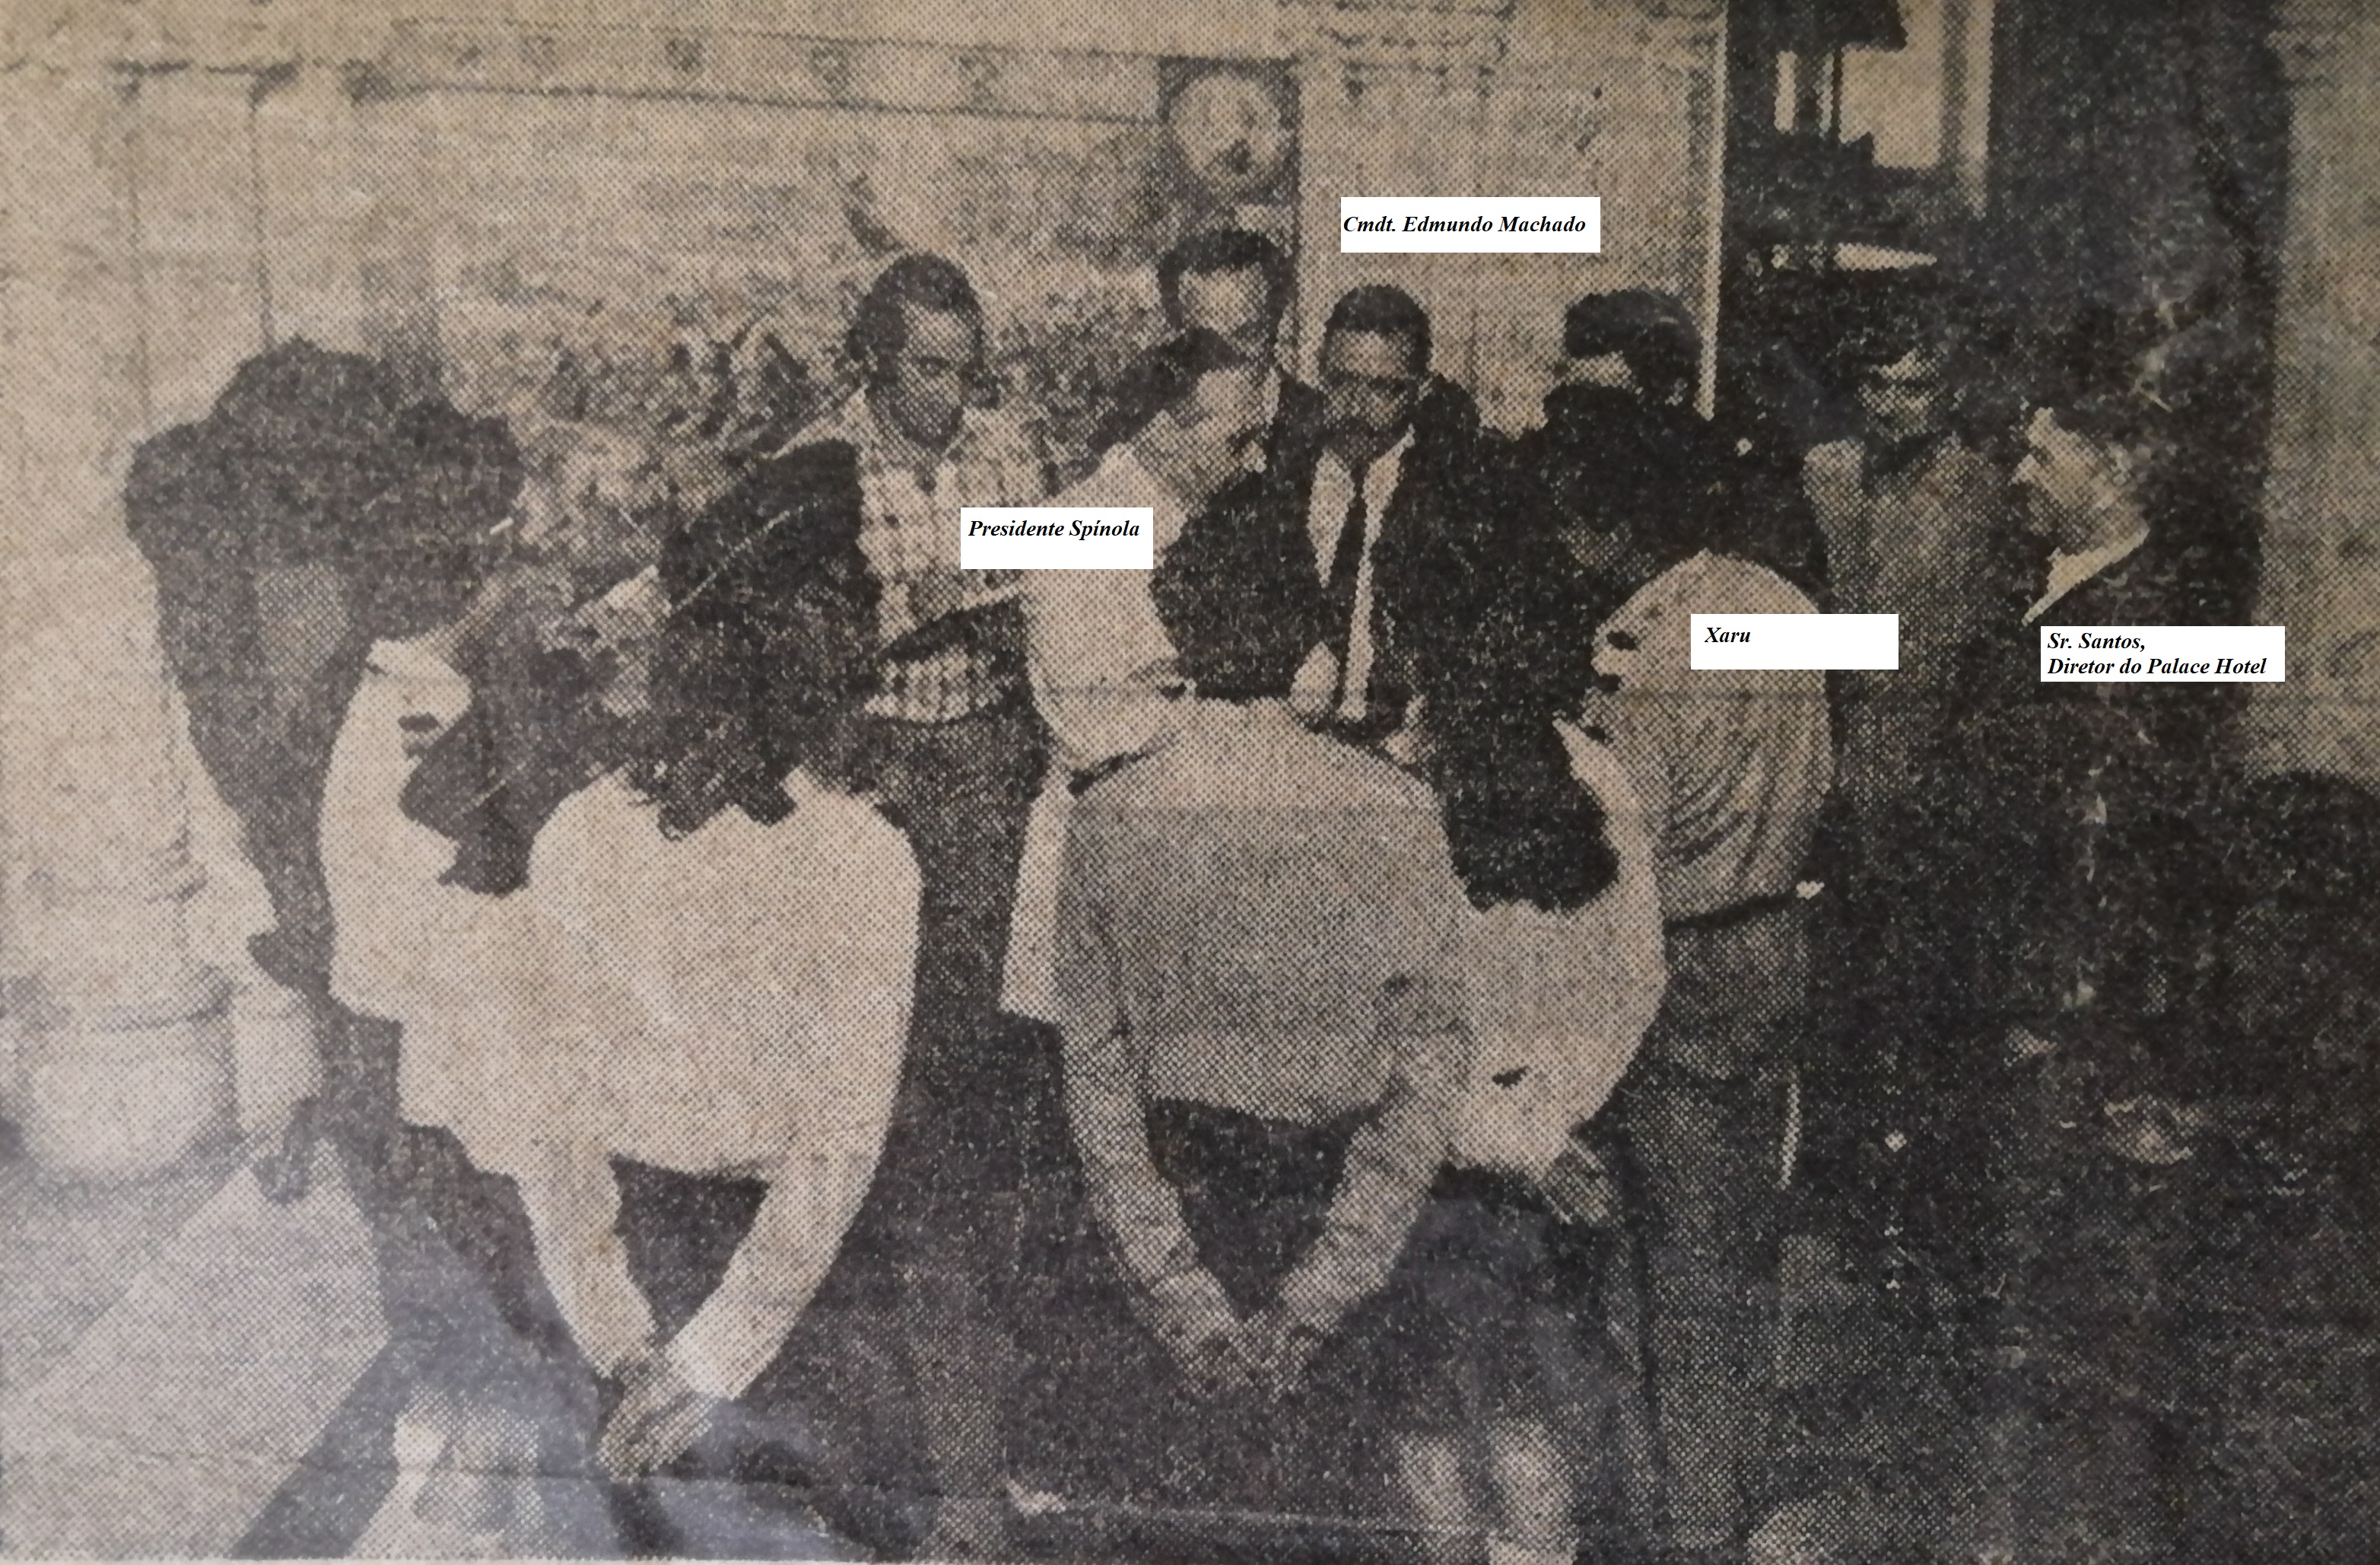 Toda a comitiva, no hall de entrada do Palace do Bussaco, em Agosto de 1974.